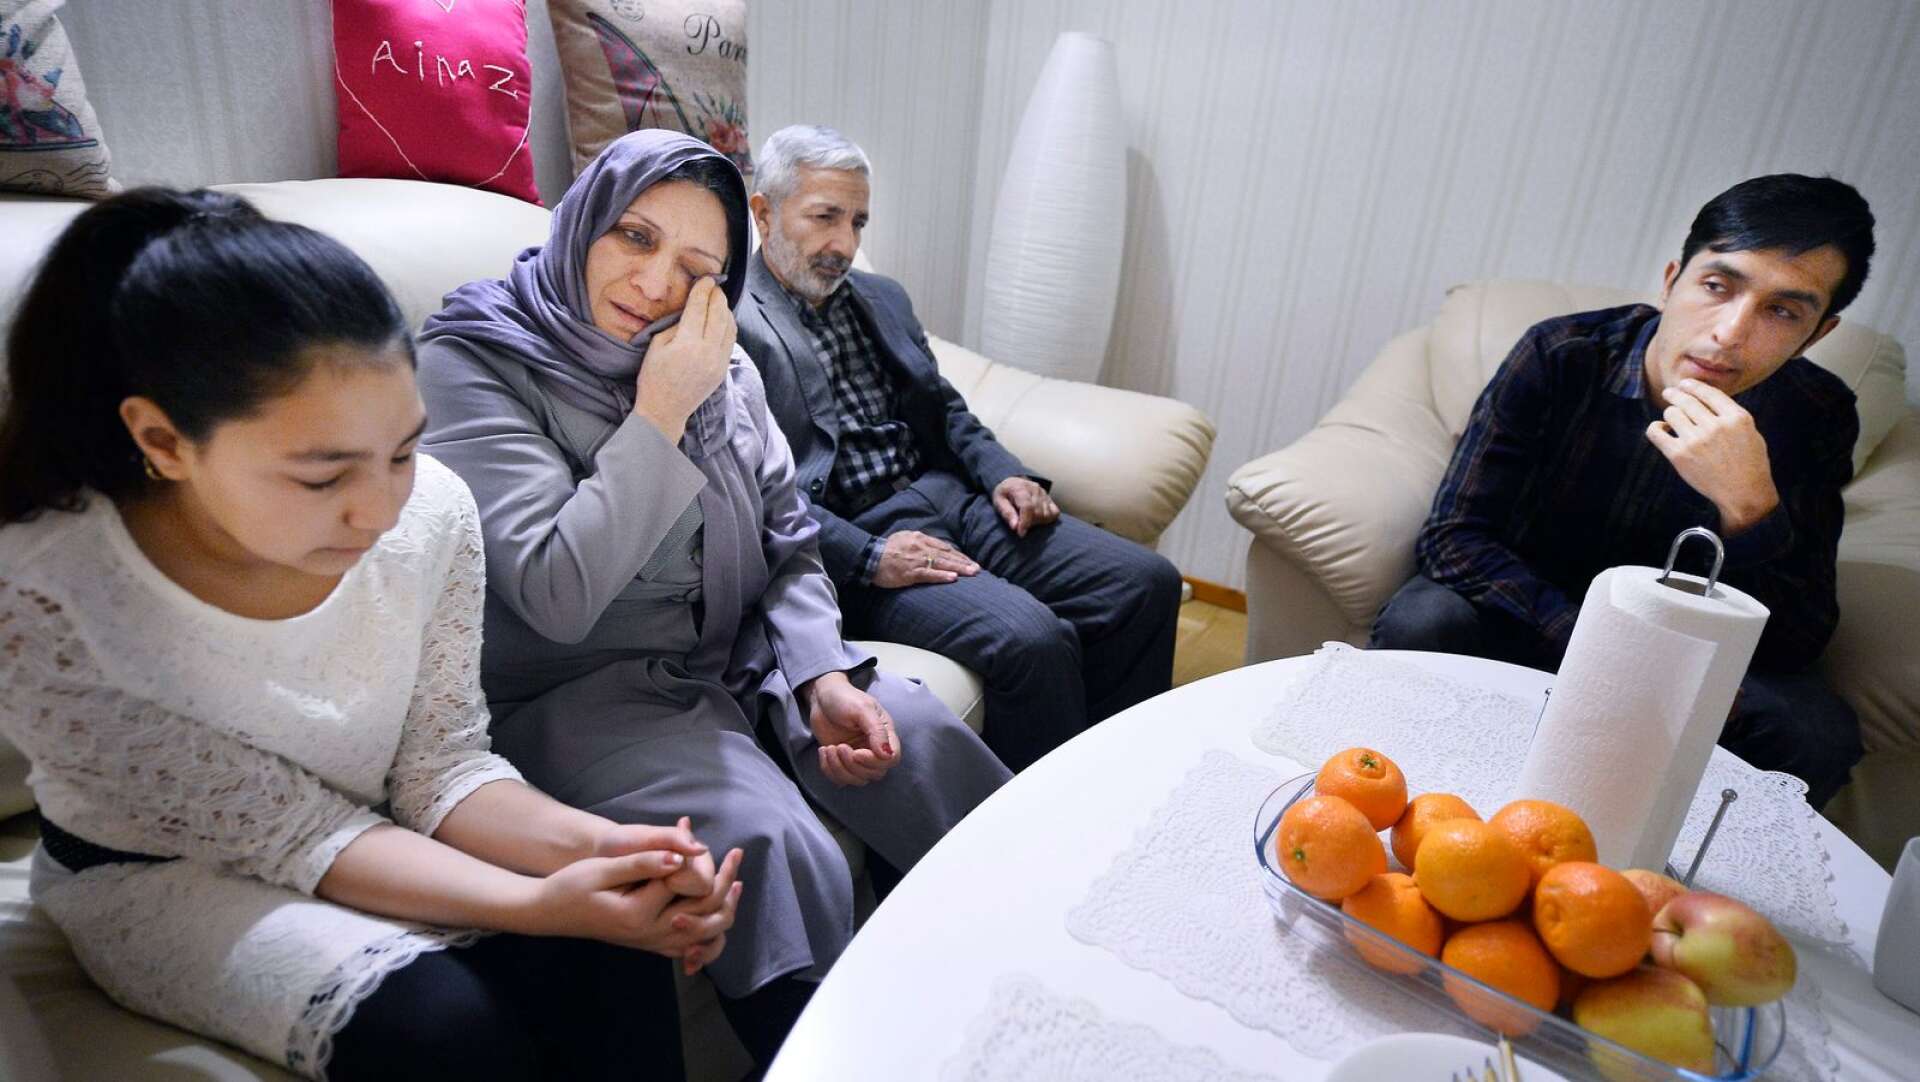 Splittring hotar fortsatt familjen Jalili i Hagfors. Tolvåriga Ainaz Jalili och hennes pappa Ghawsuddin Jalili ska utvisas till Afghanistan enligt Migrationsverkets beslut från början av oktober. Mamma Fatema Sarwani och storebror Aziz Jalili får stanna. Bilden är från förra gången Ainaz och Ghawsuddin hotades av utvisning. Den gången till Tyksland. 